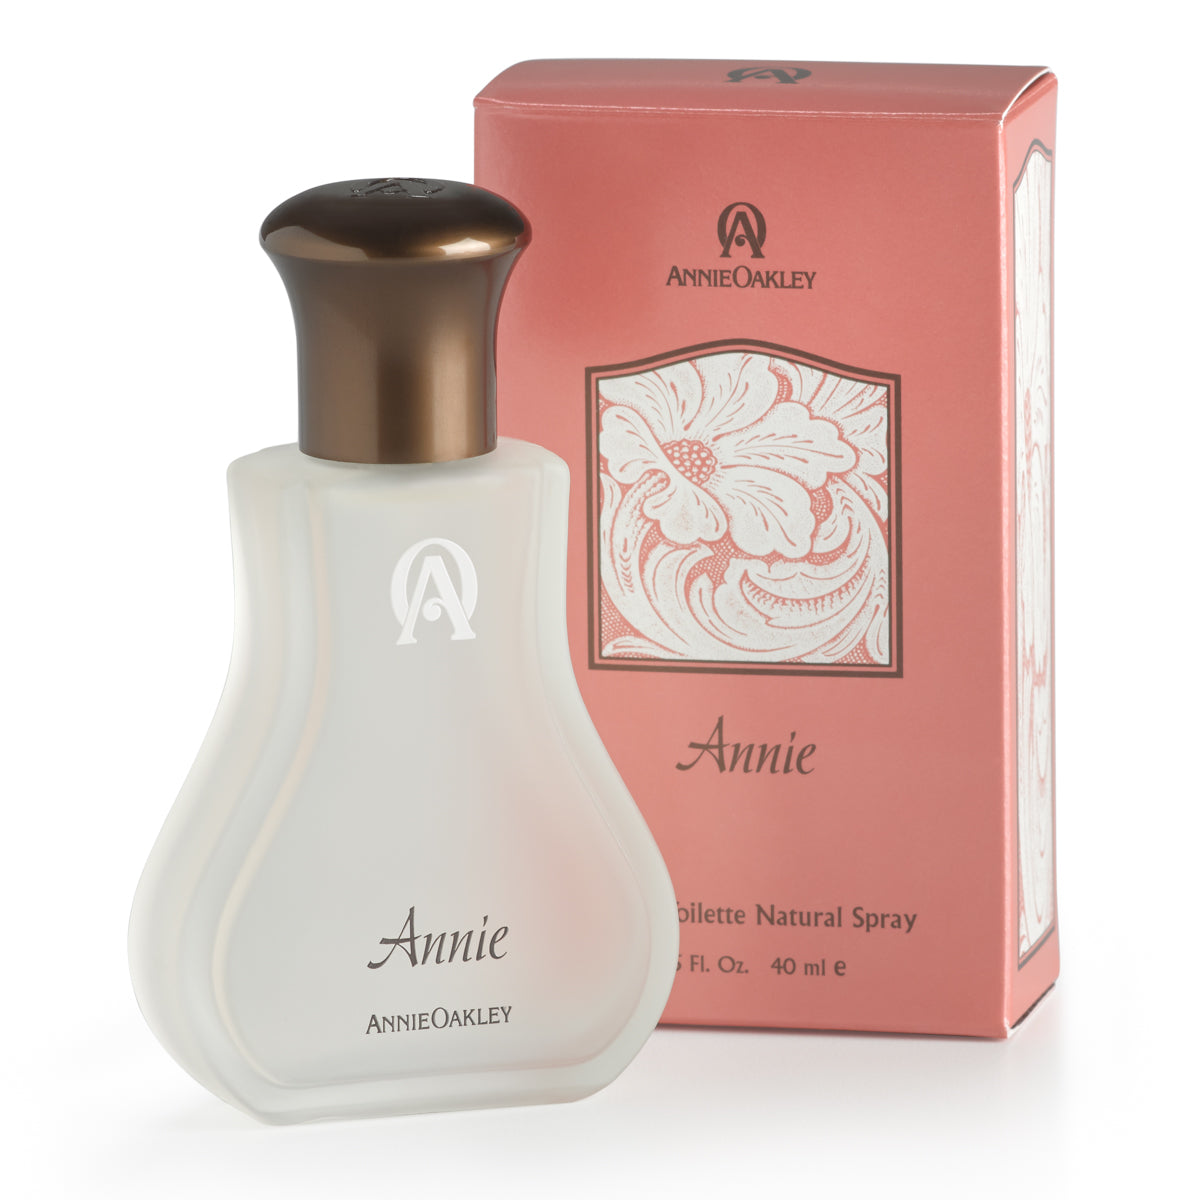 ANNIE OAKLEY - Annie Perfume – Circle H Western Store